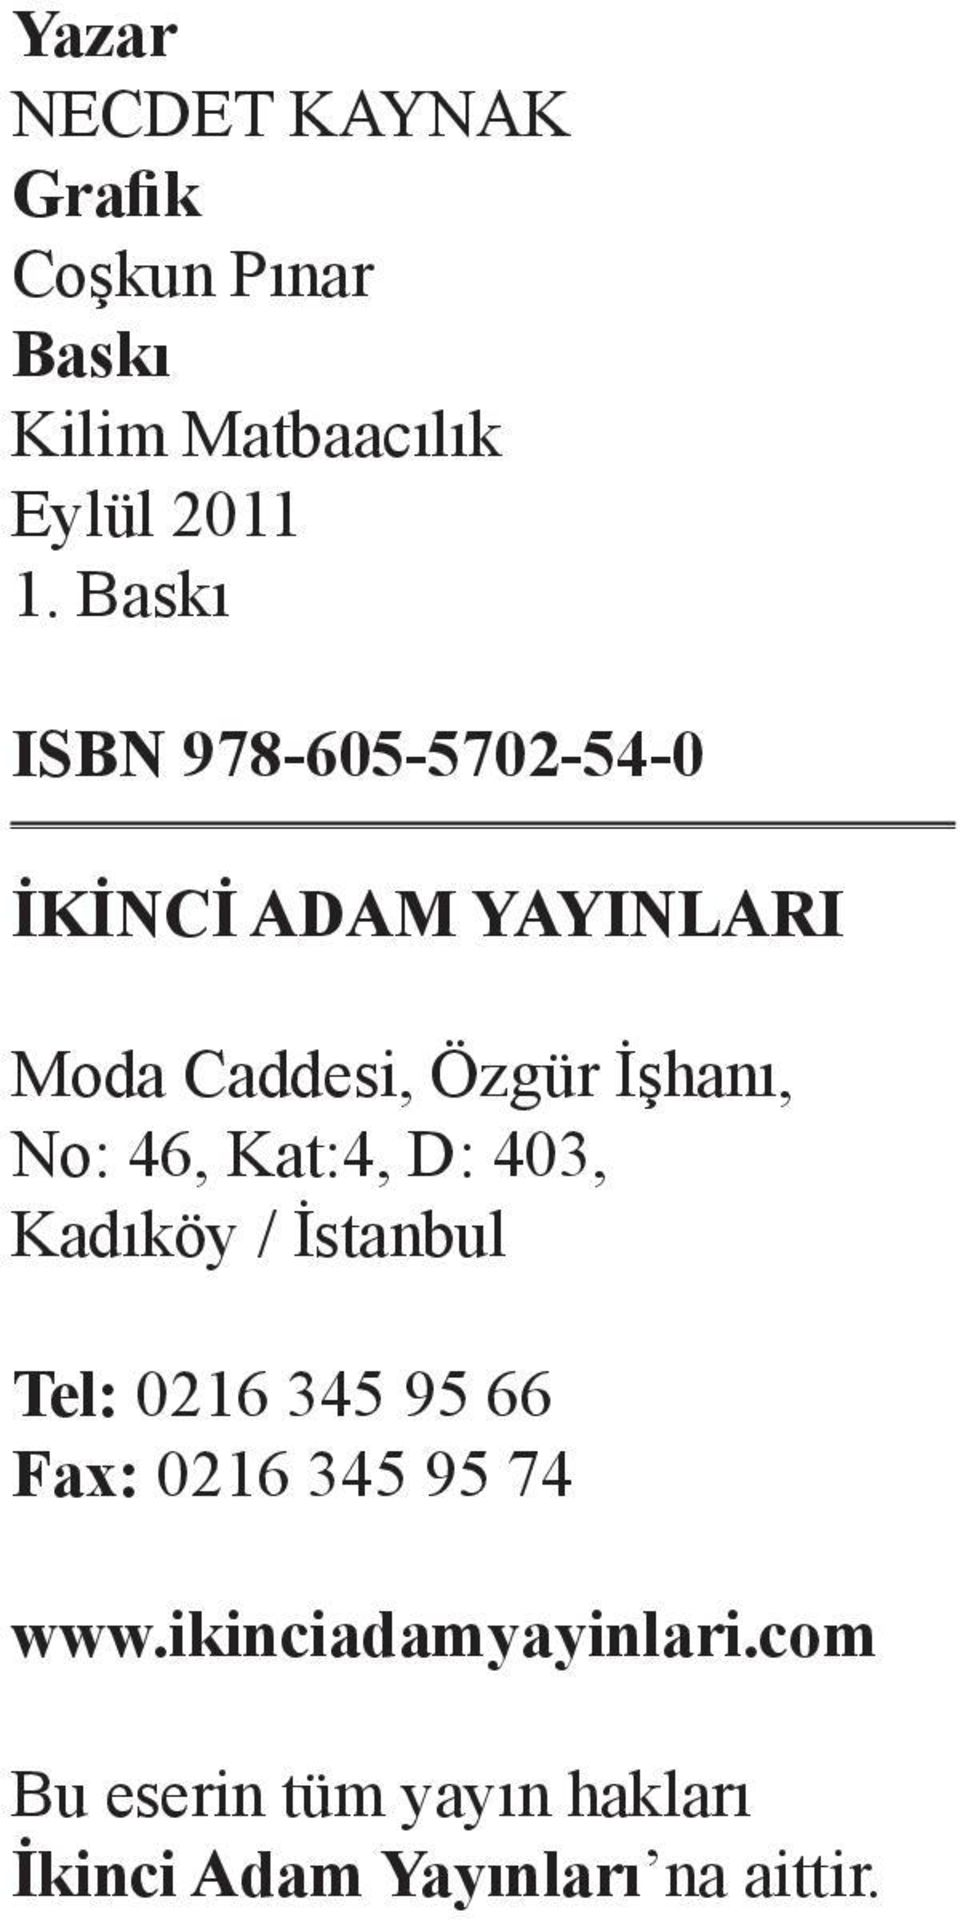 No: 46, Kat:4, D: 403, Kadıköy / İstanbul Tel: 0216 345 95 66 Fax: 0216 345 95 74